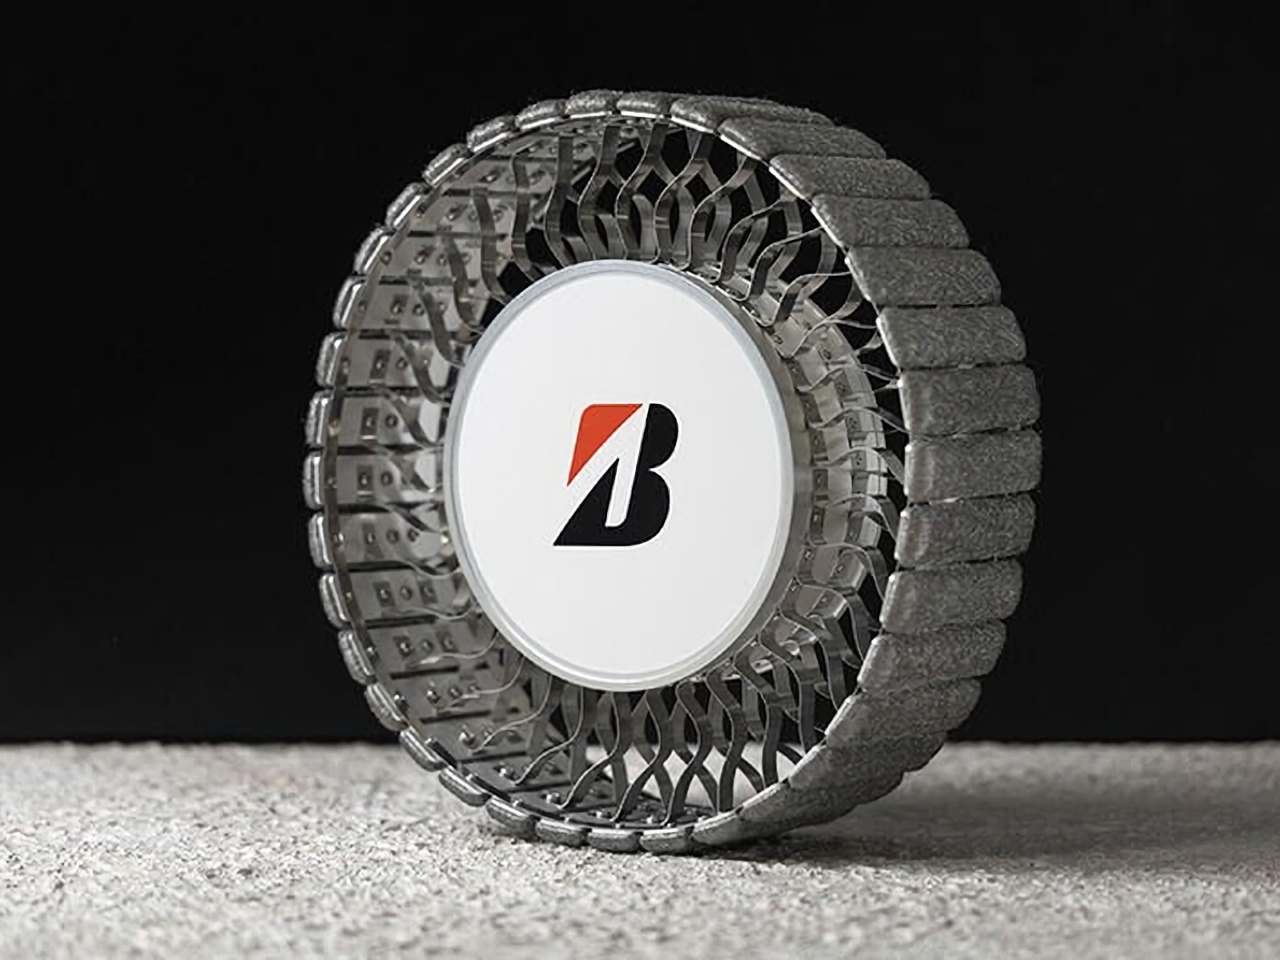 ブリヂストン、月面探査車用の新型タイヤを開発--金属ホイールなどで耐久性と走破性を両立